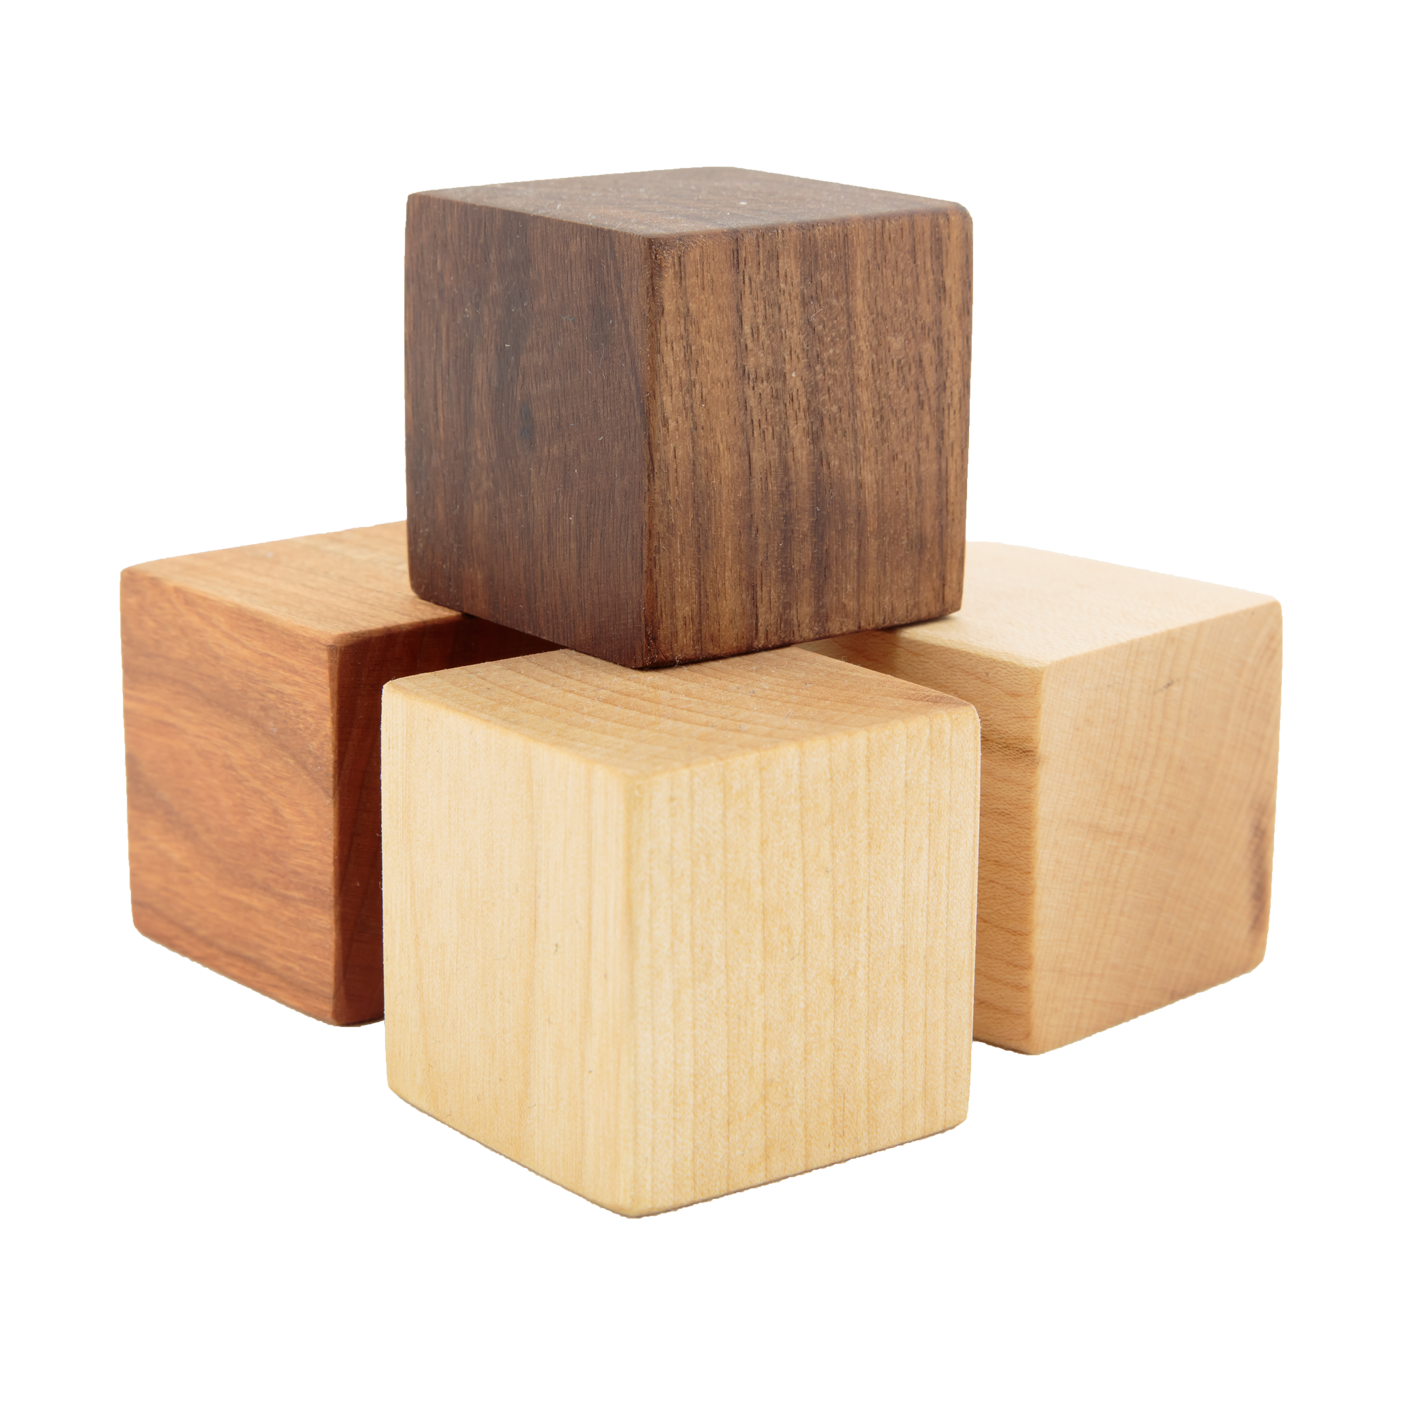 Wooden Block PNG-PlusPNG.com-